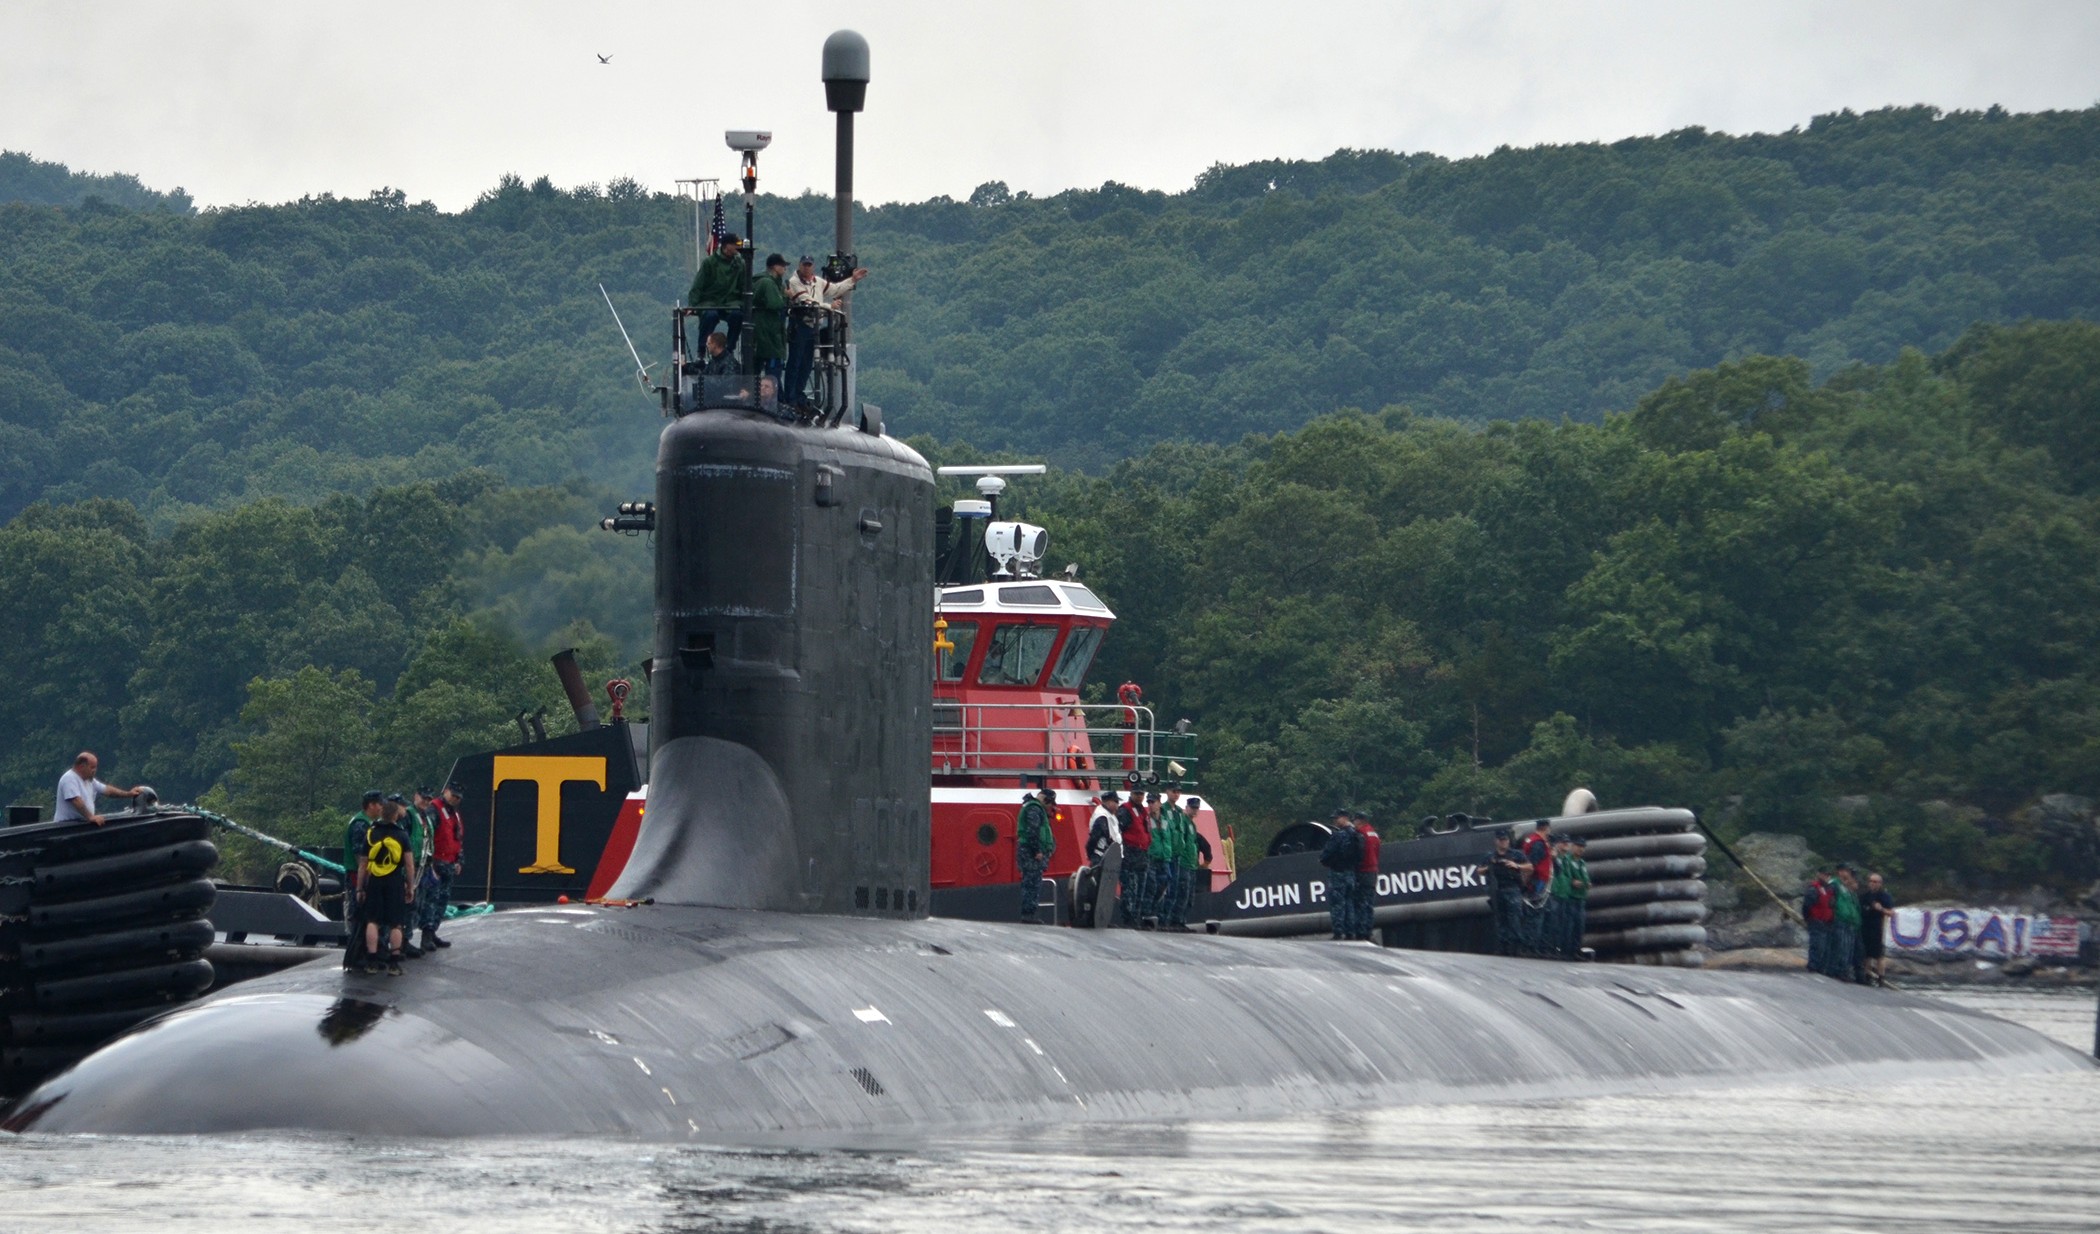 ssn-774 uss virginia attack submarine navy 2013 08